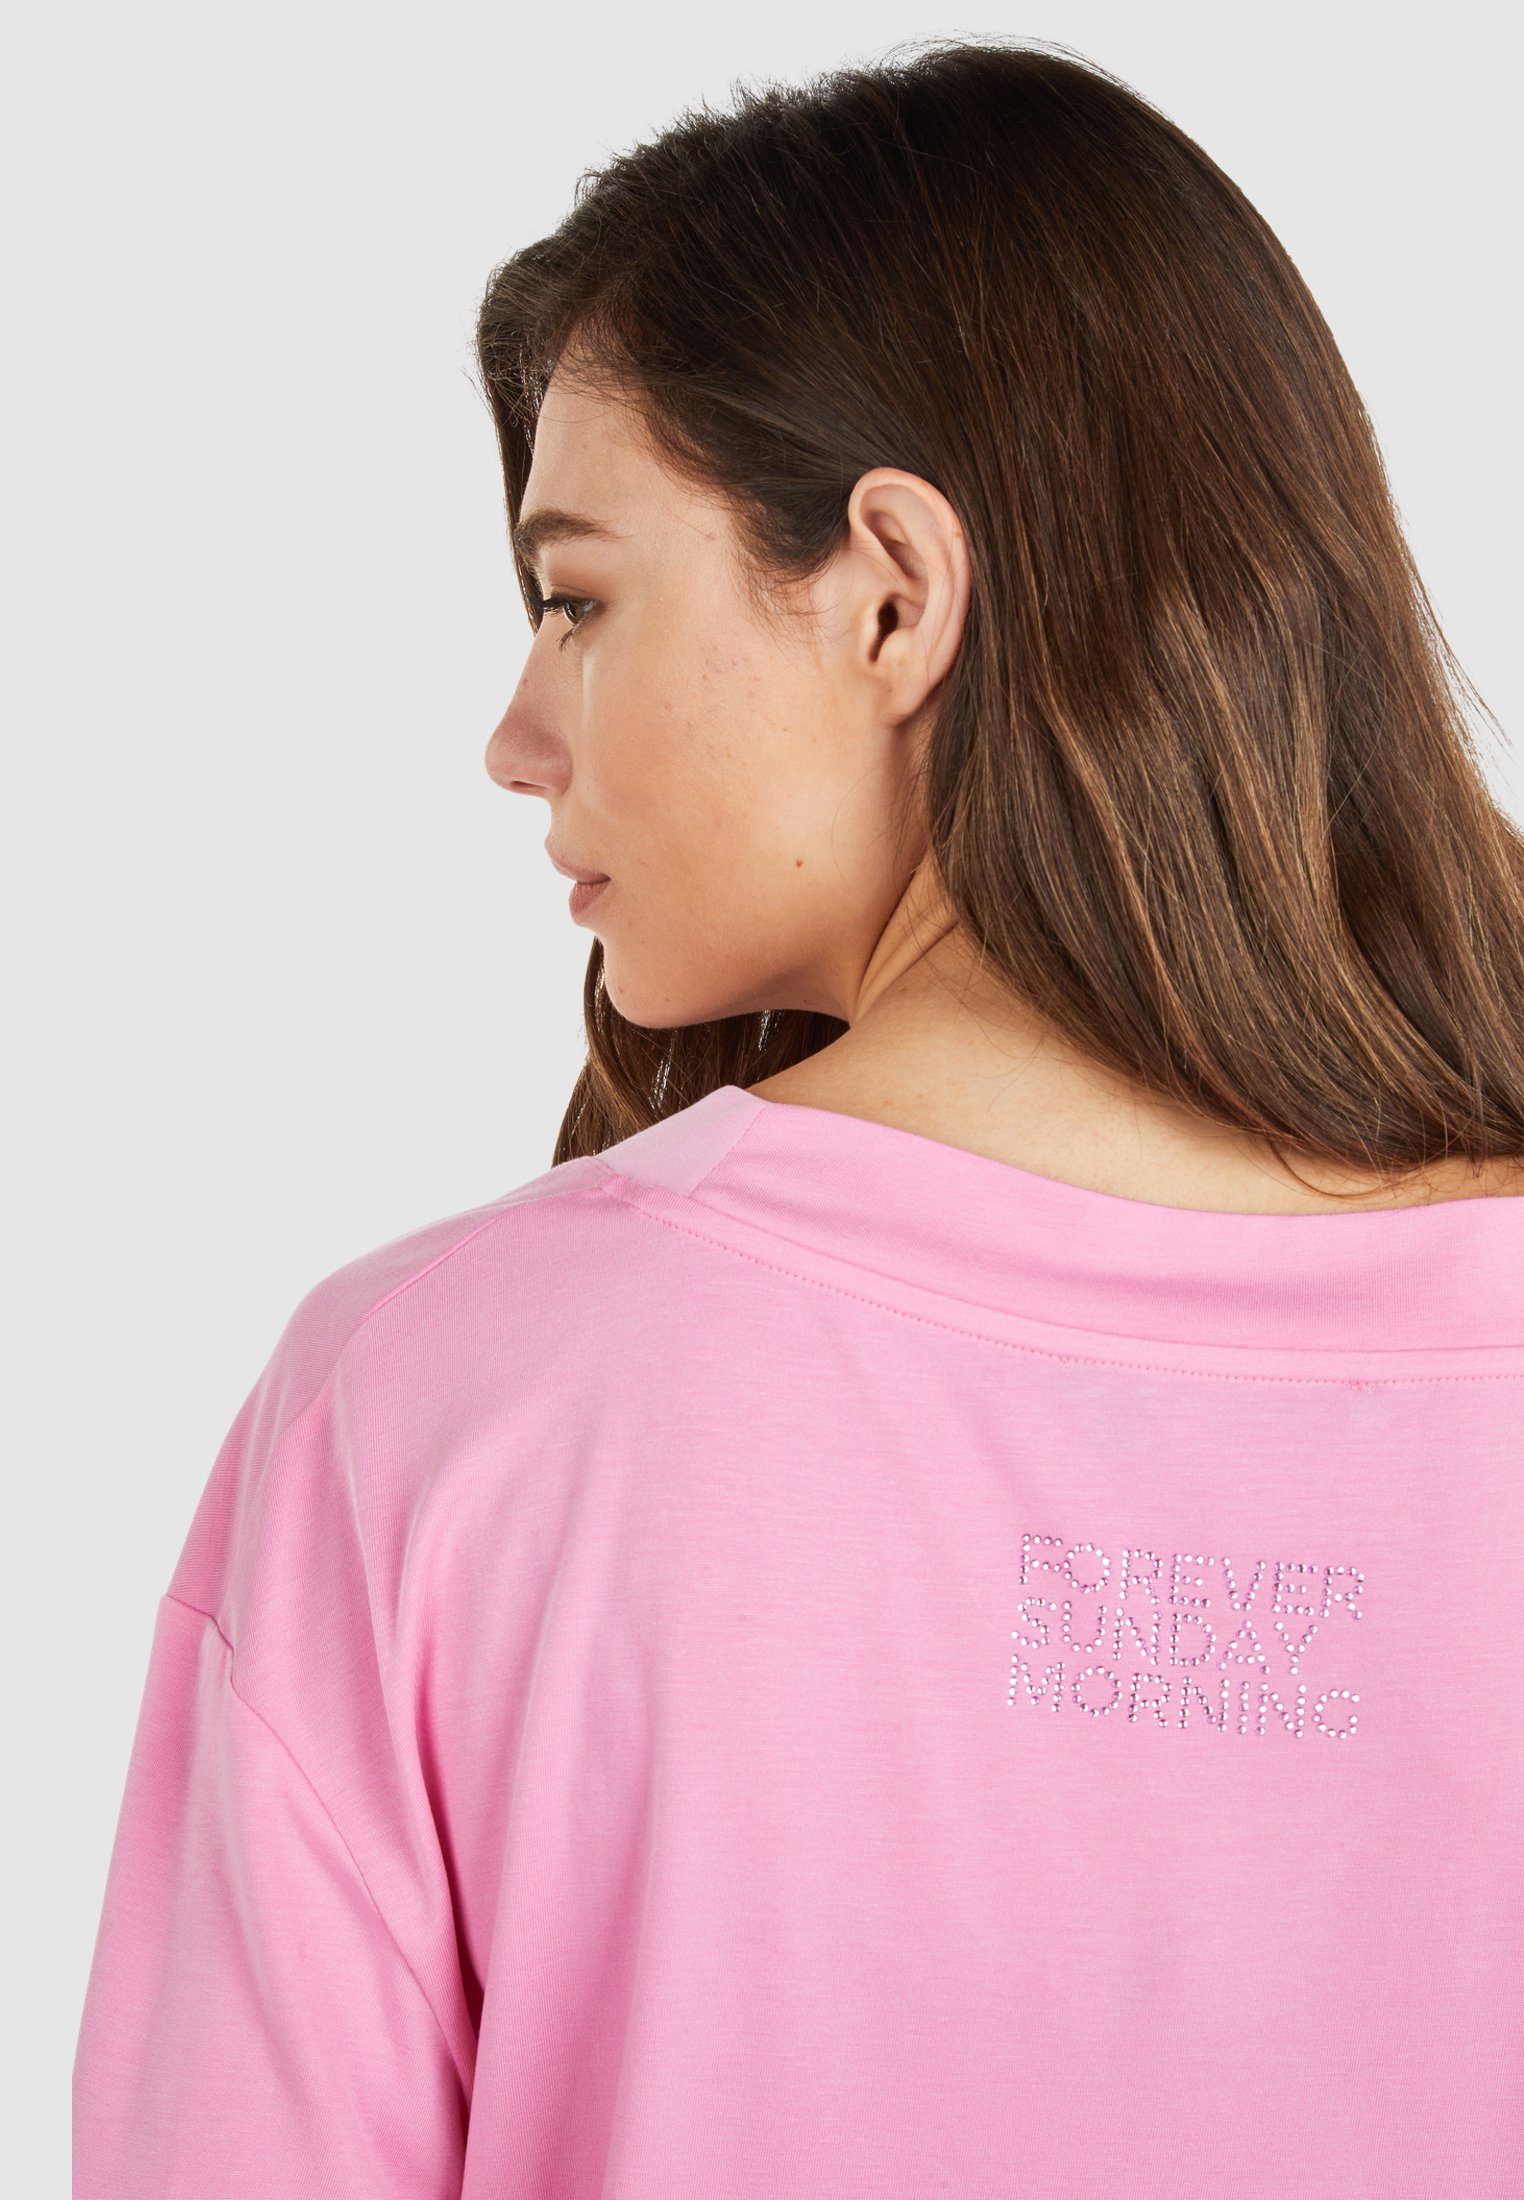 V-Ausschnitt pink AUREL candy MARC mit großem T-Shirt